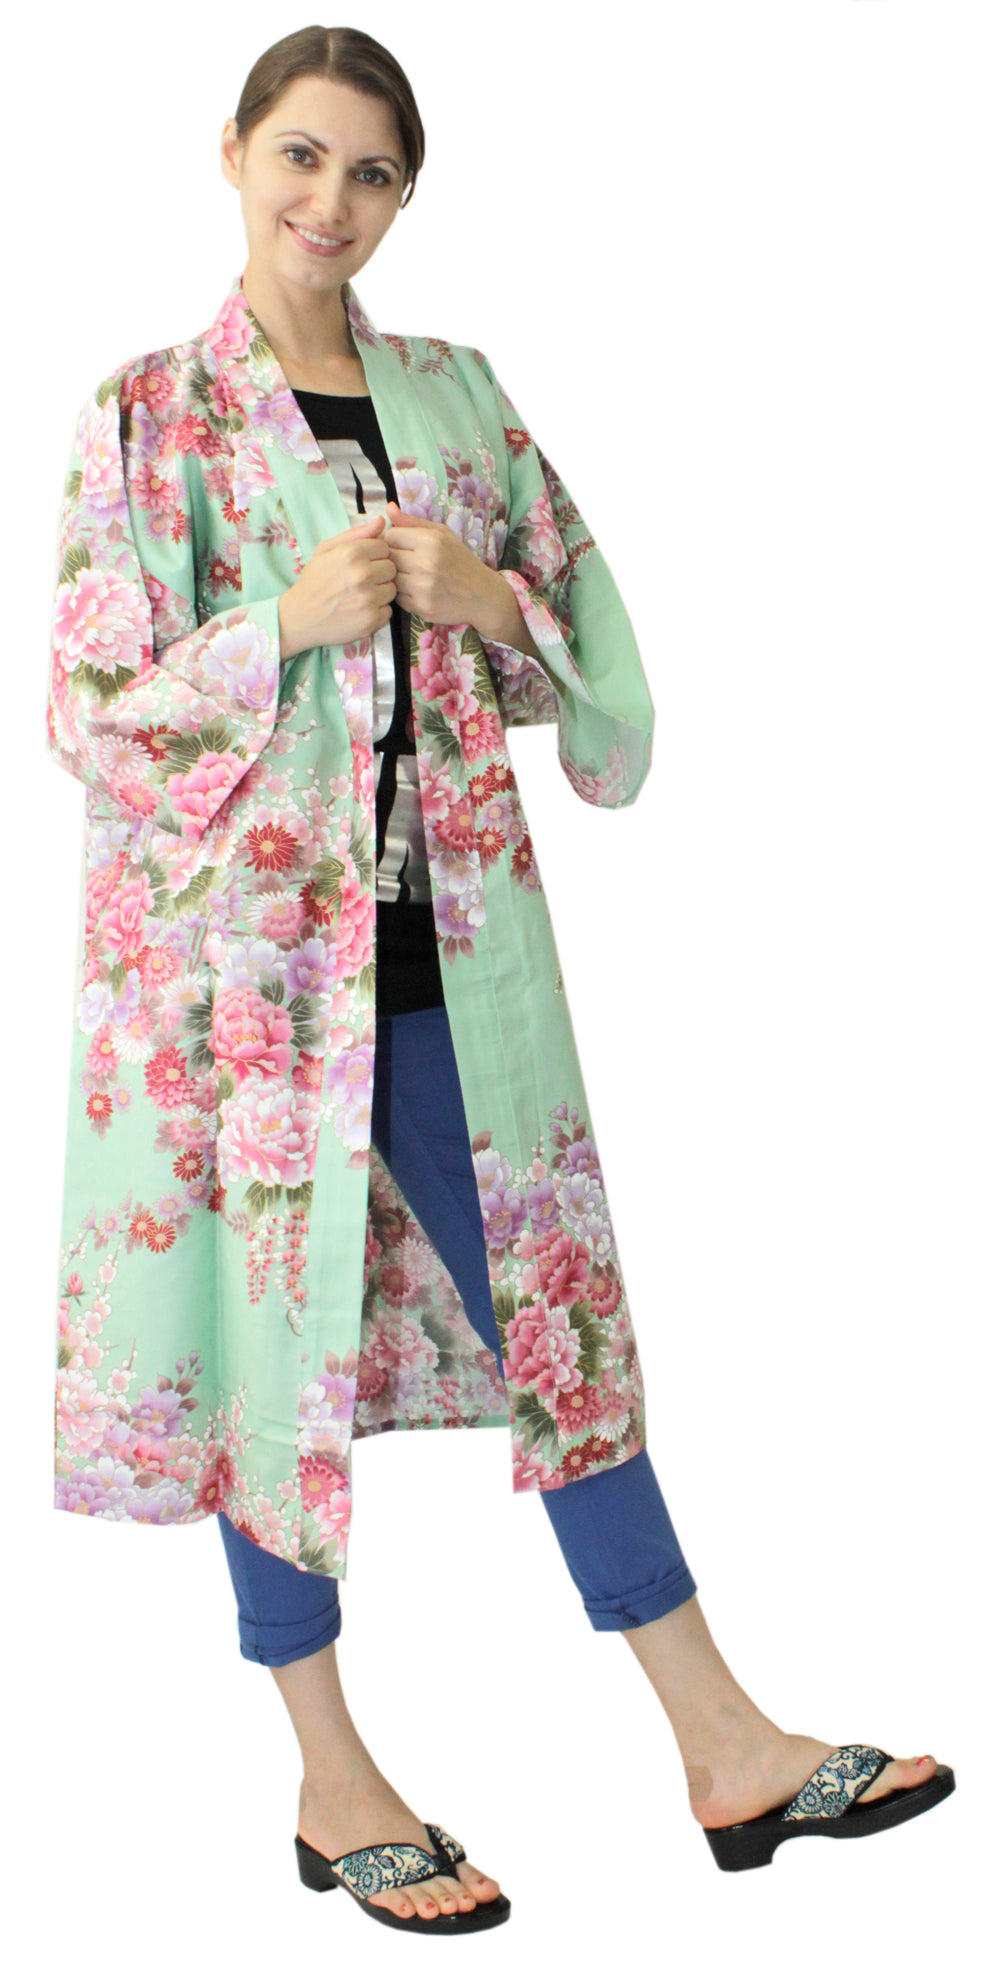 Women's Happi Coat: Kimono Robe - Flowers in Bloom Turquois